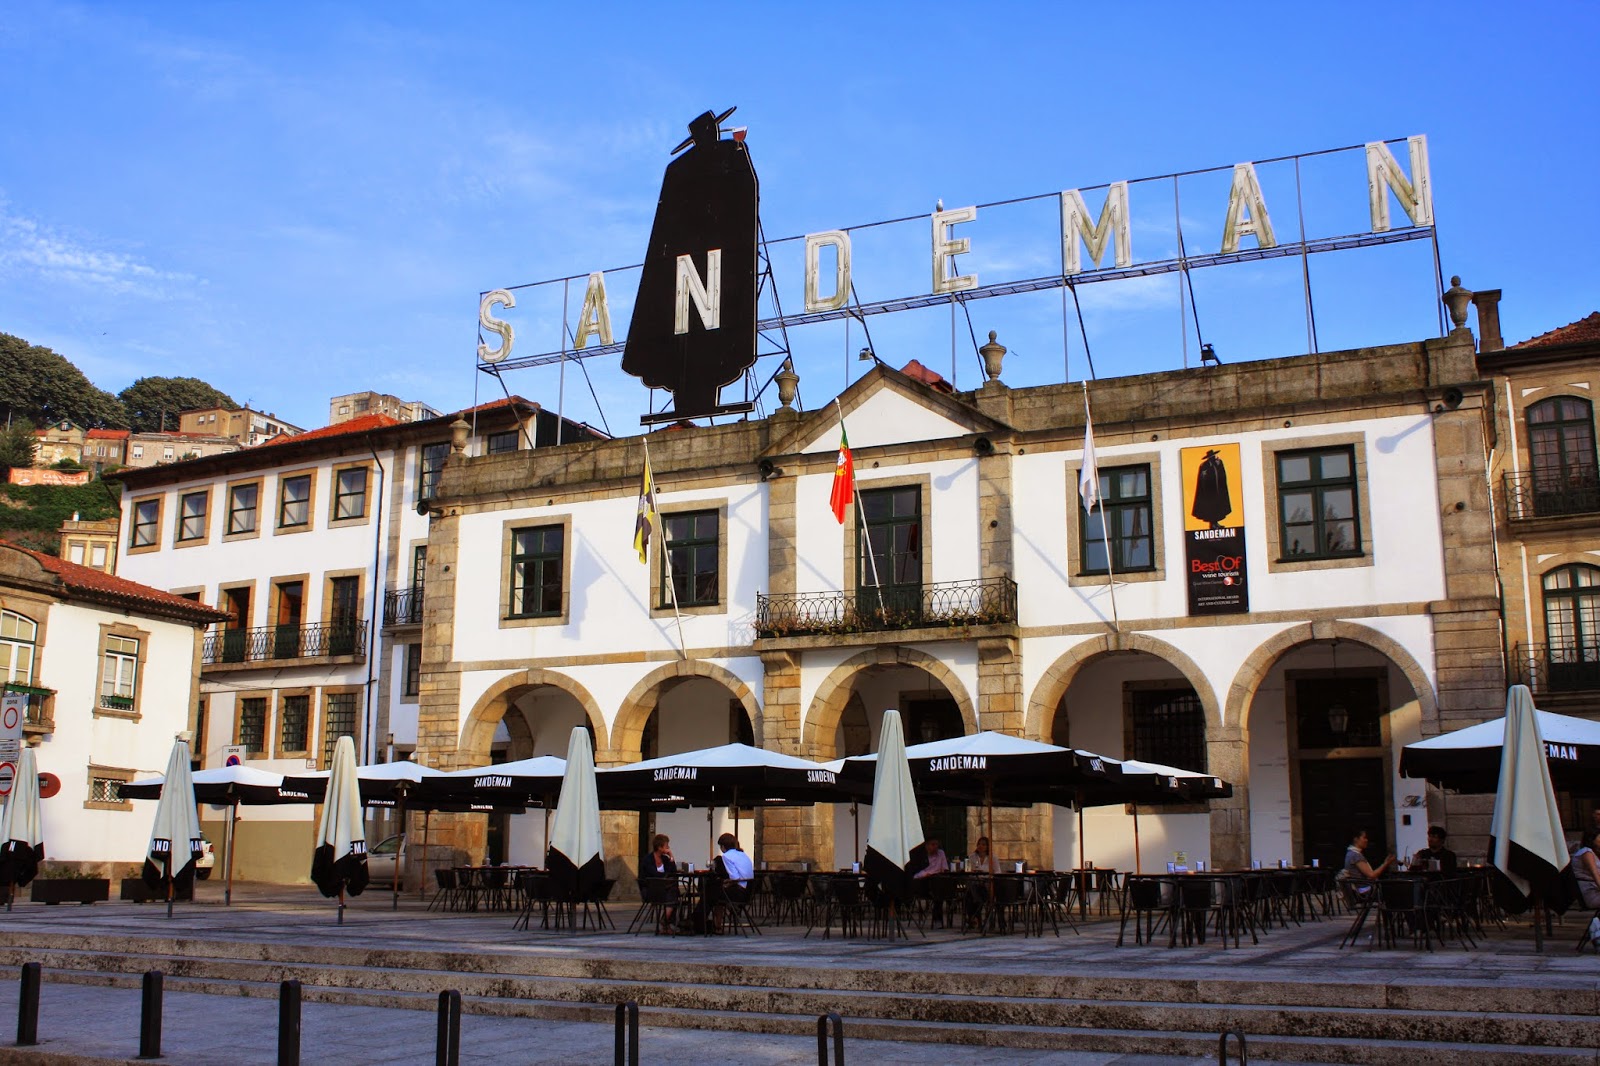 Venha explorar o melhor de Portugal | Os lugares a visitar em Portugal